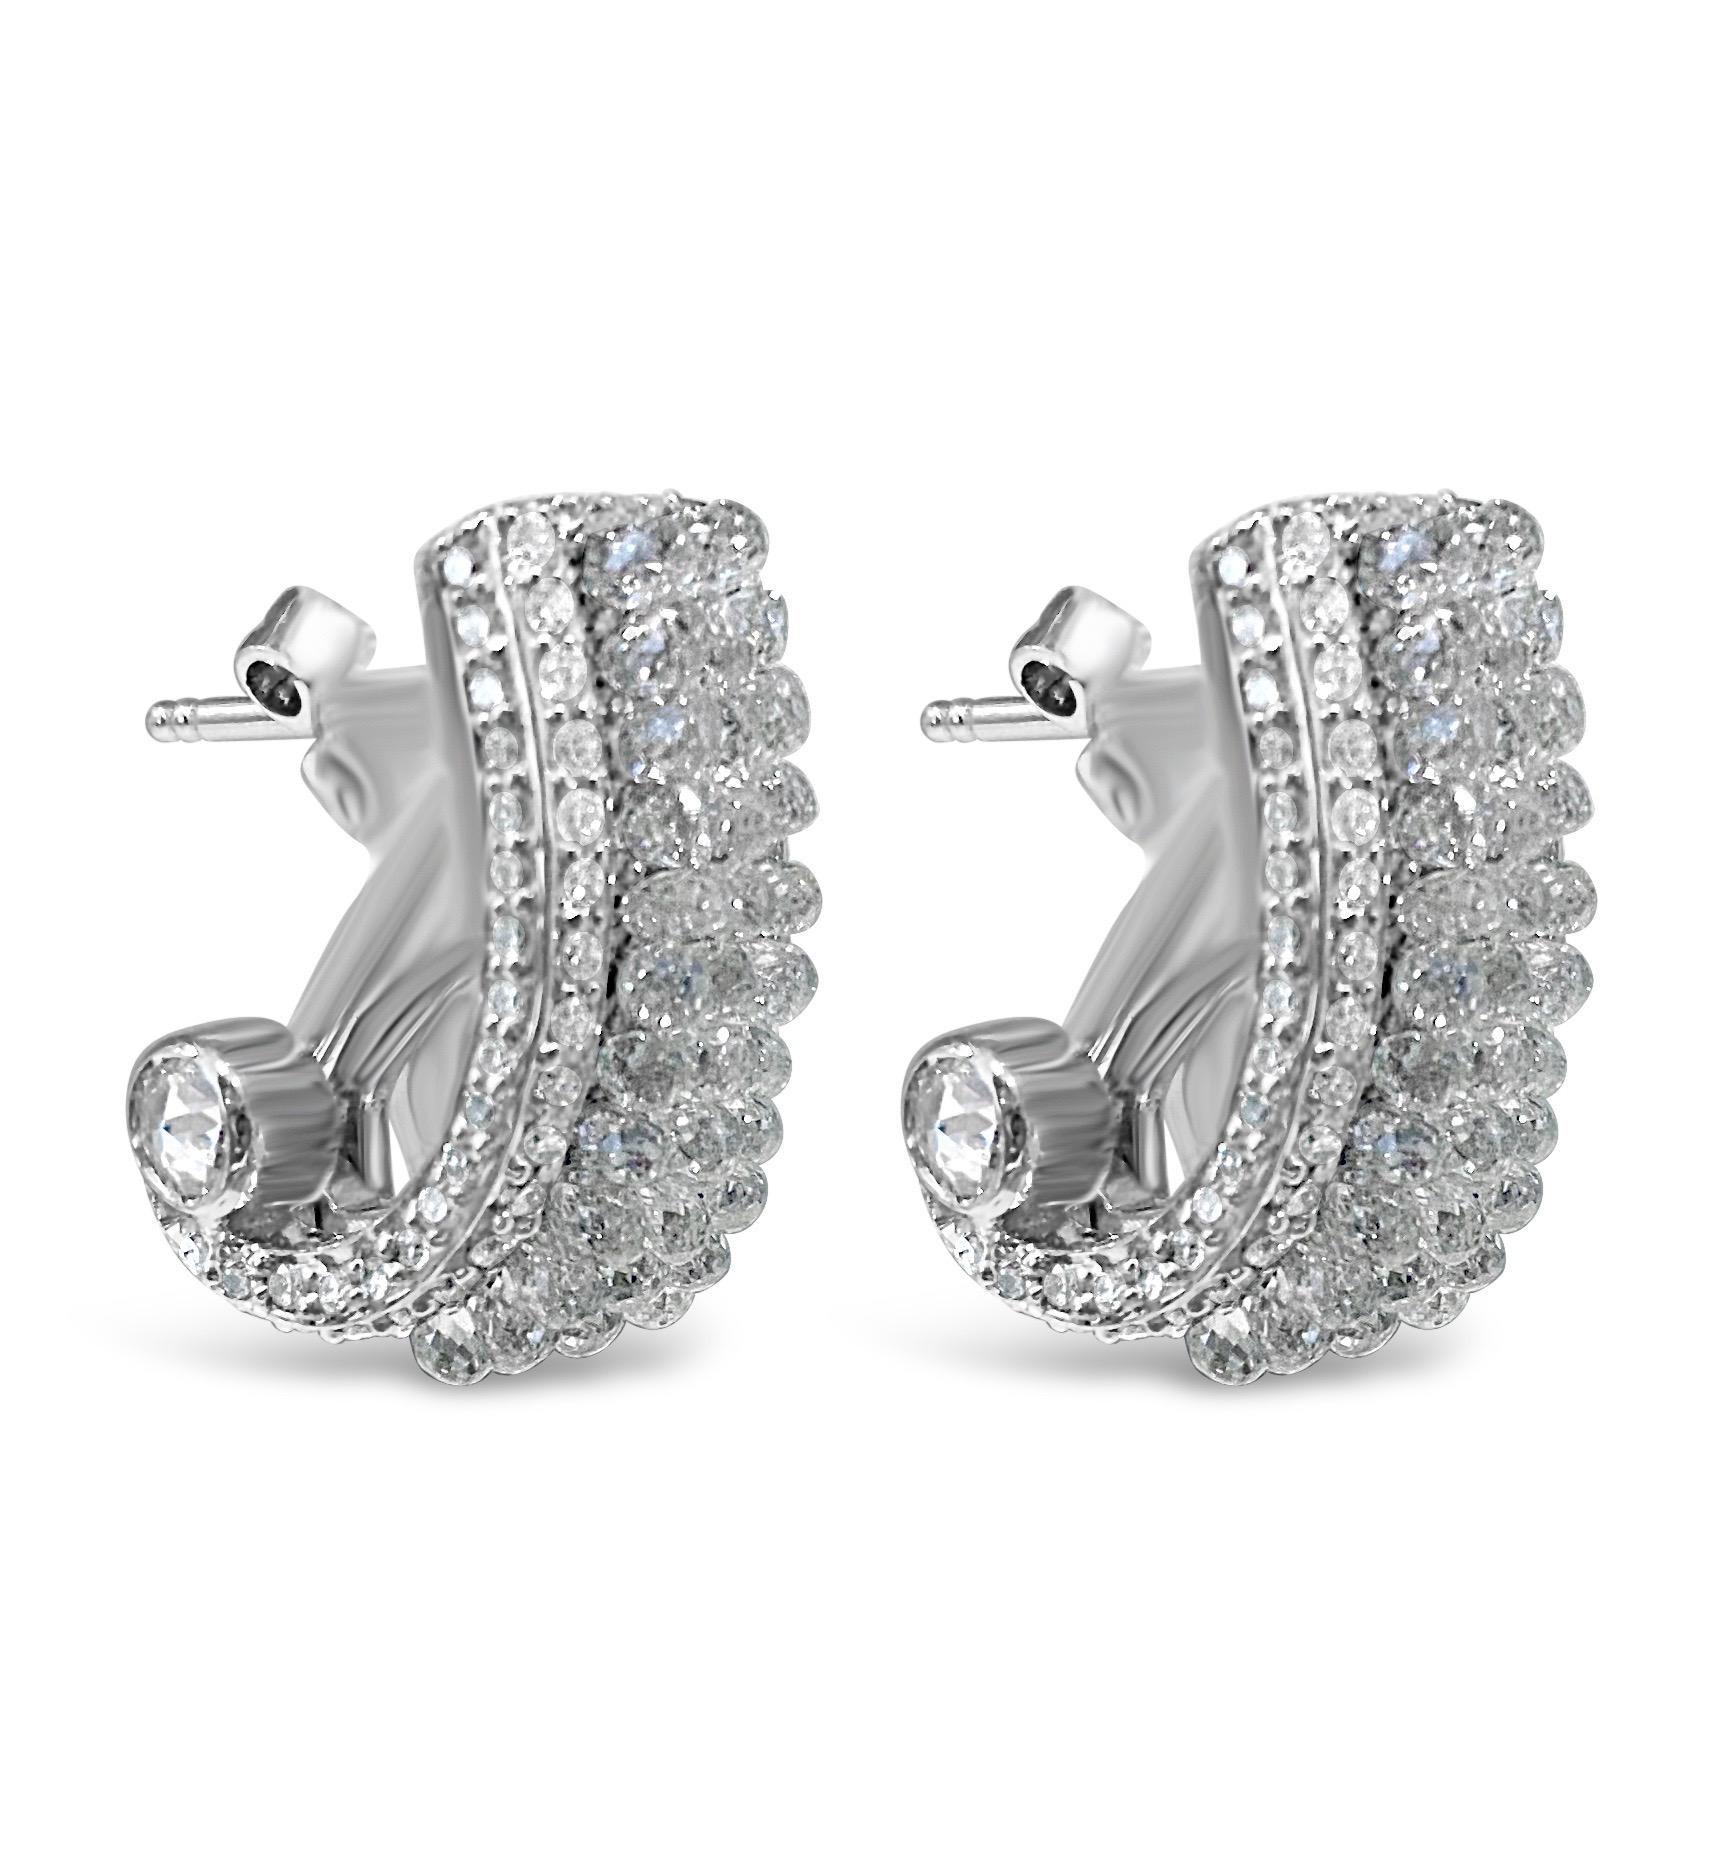 Wir stellen die Vienna Earrings vor, ein Design, wie Sie es noch nie gesehen haben. 
Eine künstlerische Kreation mit 10 Karat Briolette-Diamanten, die in 3 Reihen vertikal gefasst sind und schimmern und funkeln.  Der Briolett-Schliff lässt die